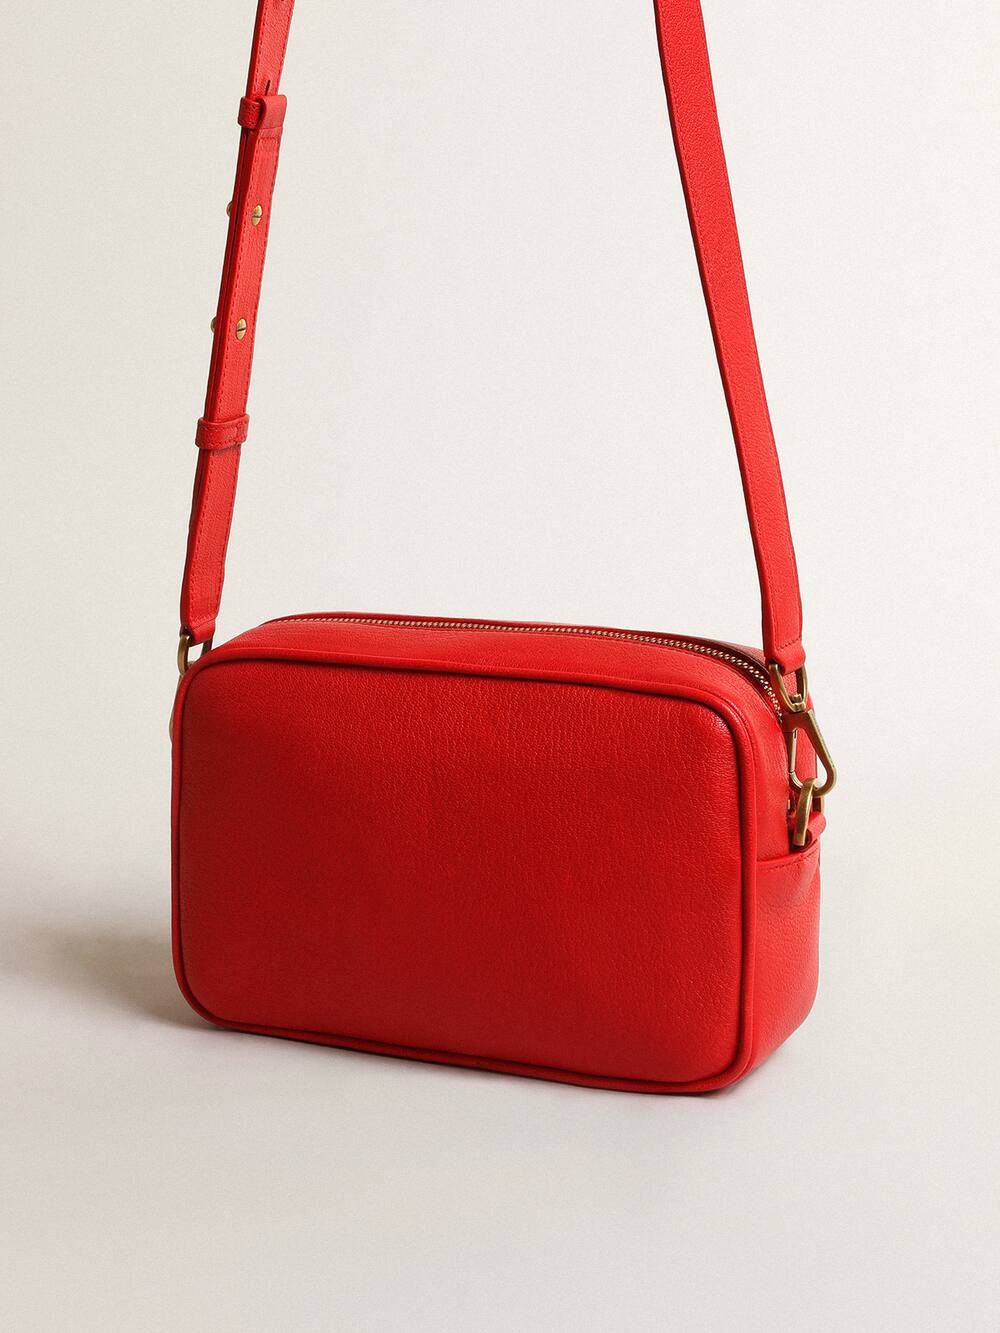 Golden Goose - Star Bag de mujer de piel color rojo vivo in 